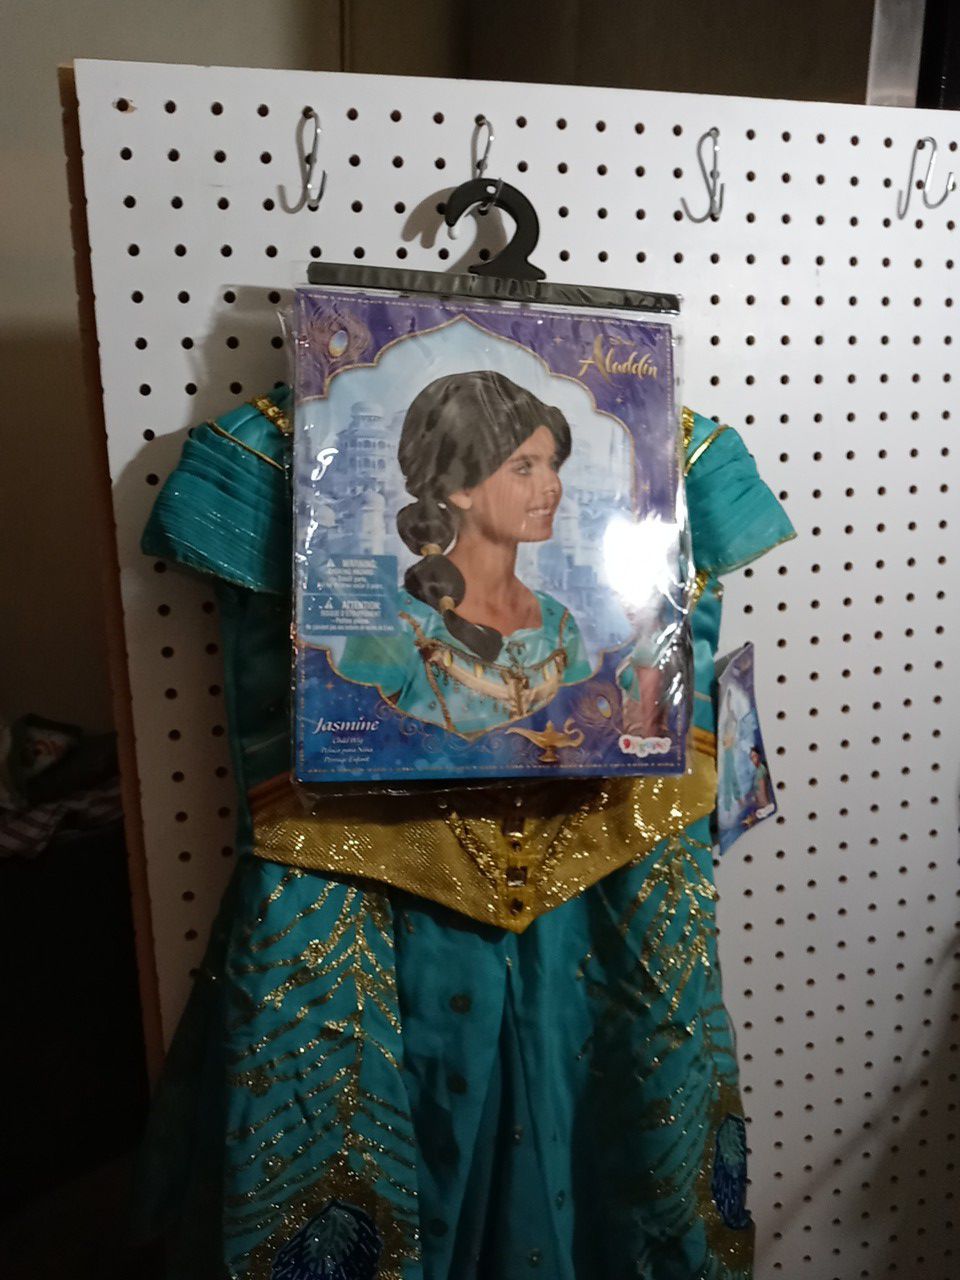 Aladdin costume